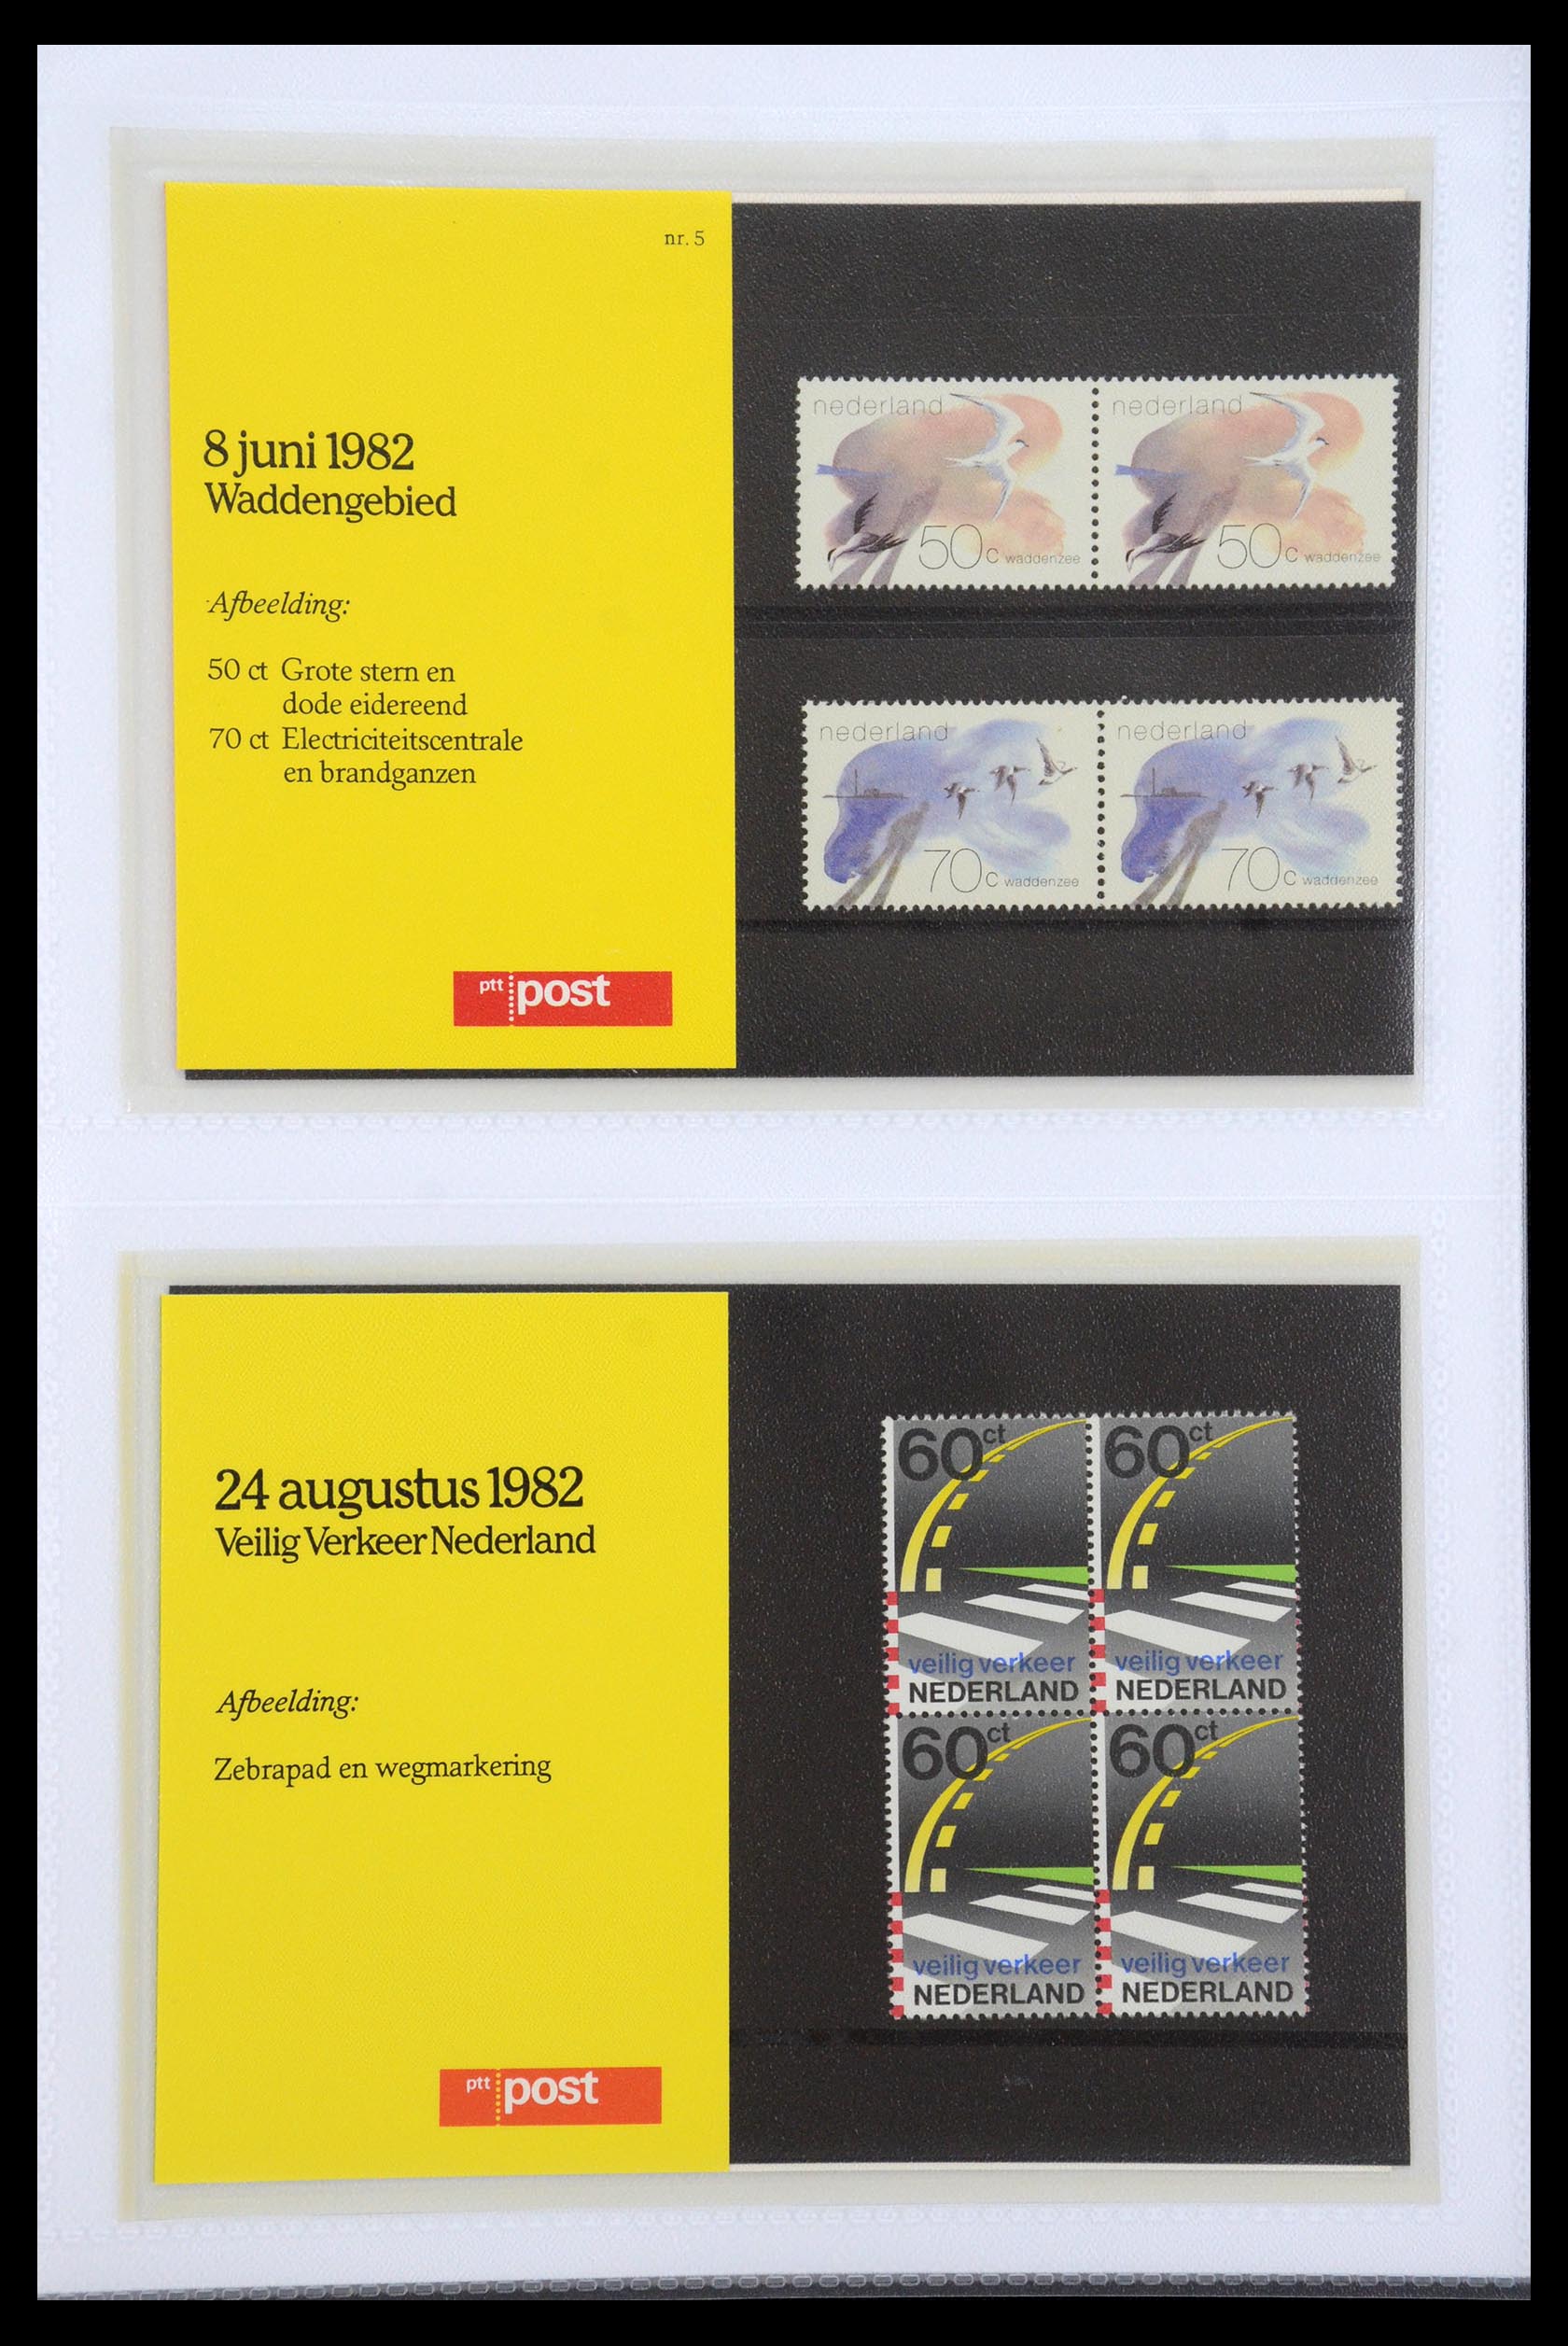 35947 003 - Stamp Collection 35947 Netherlands PTT presentation packs 1982-2019!